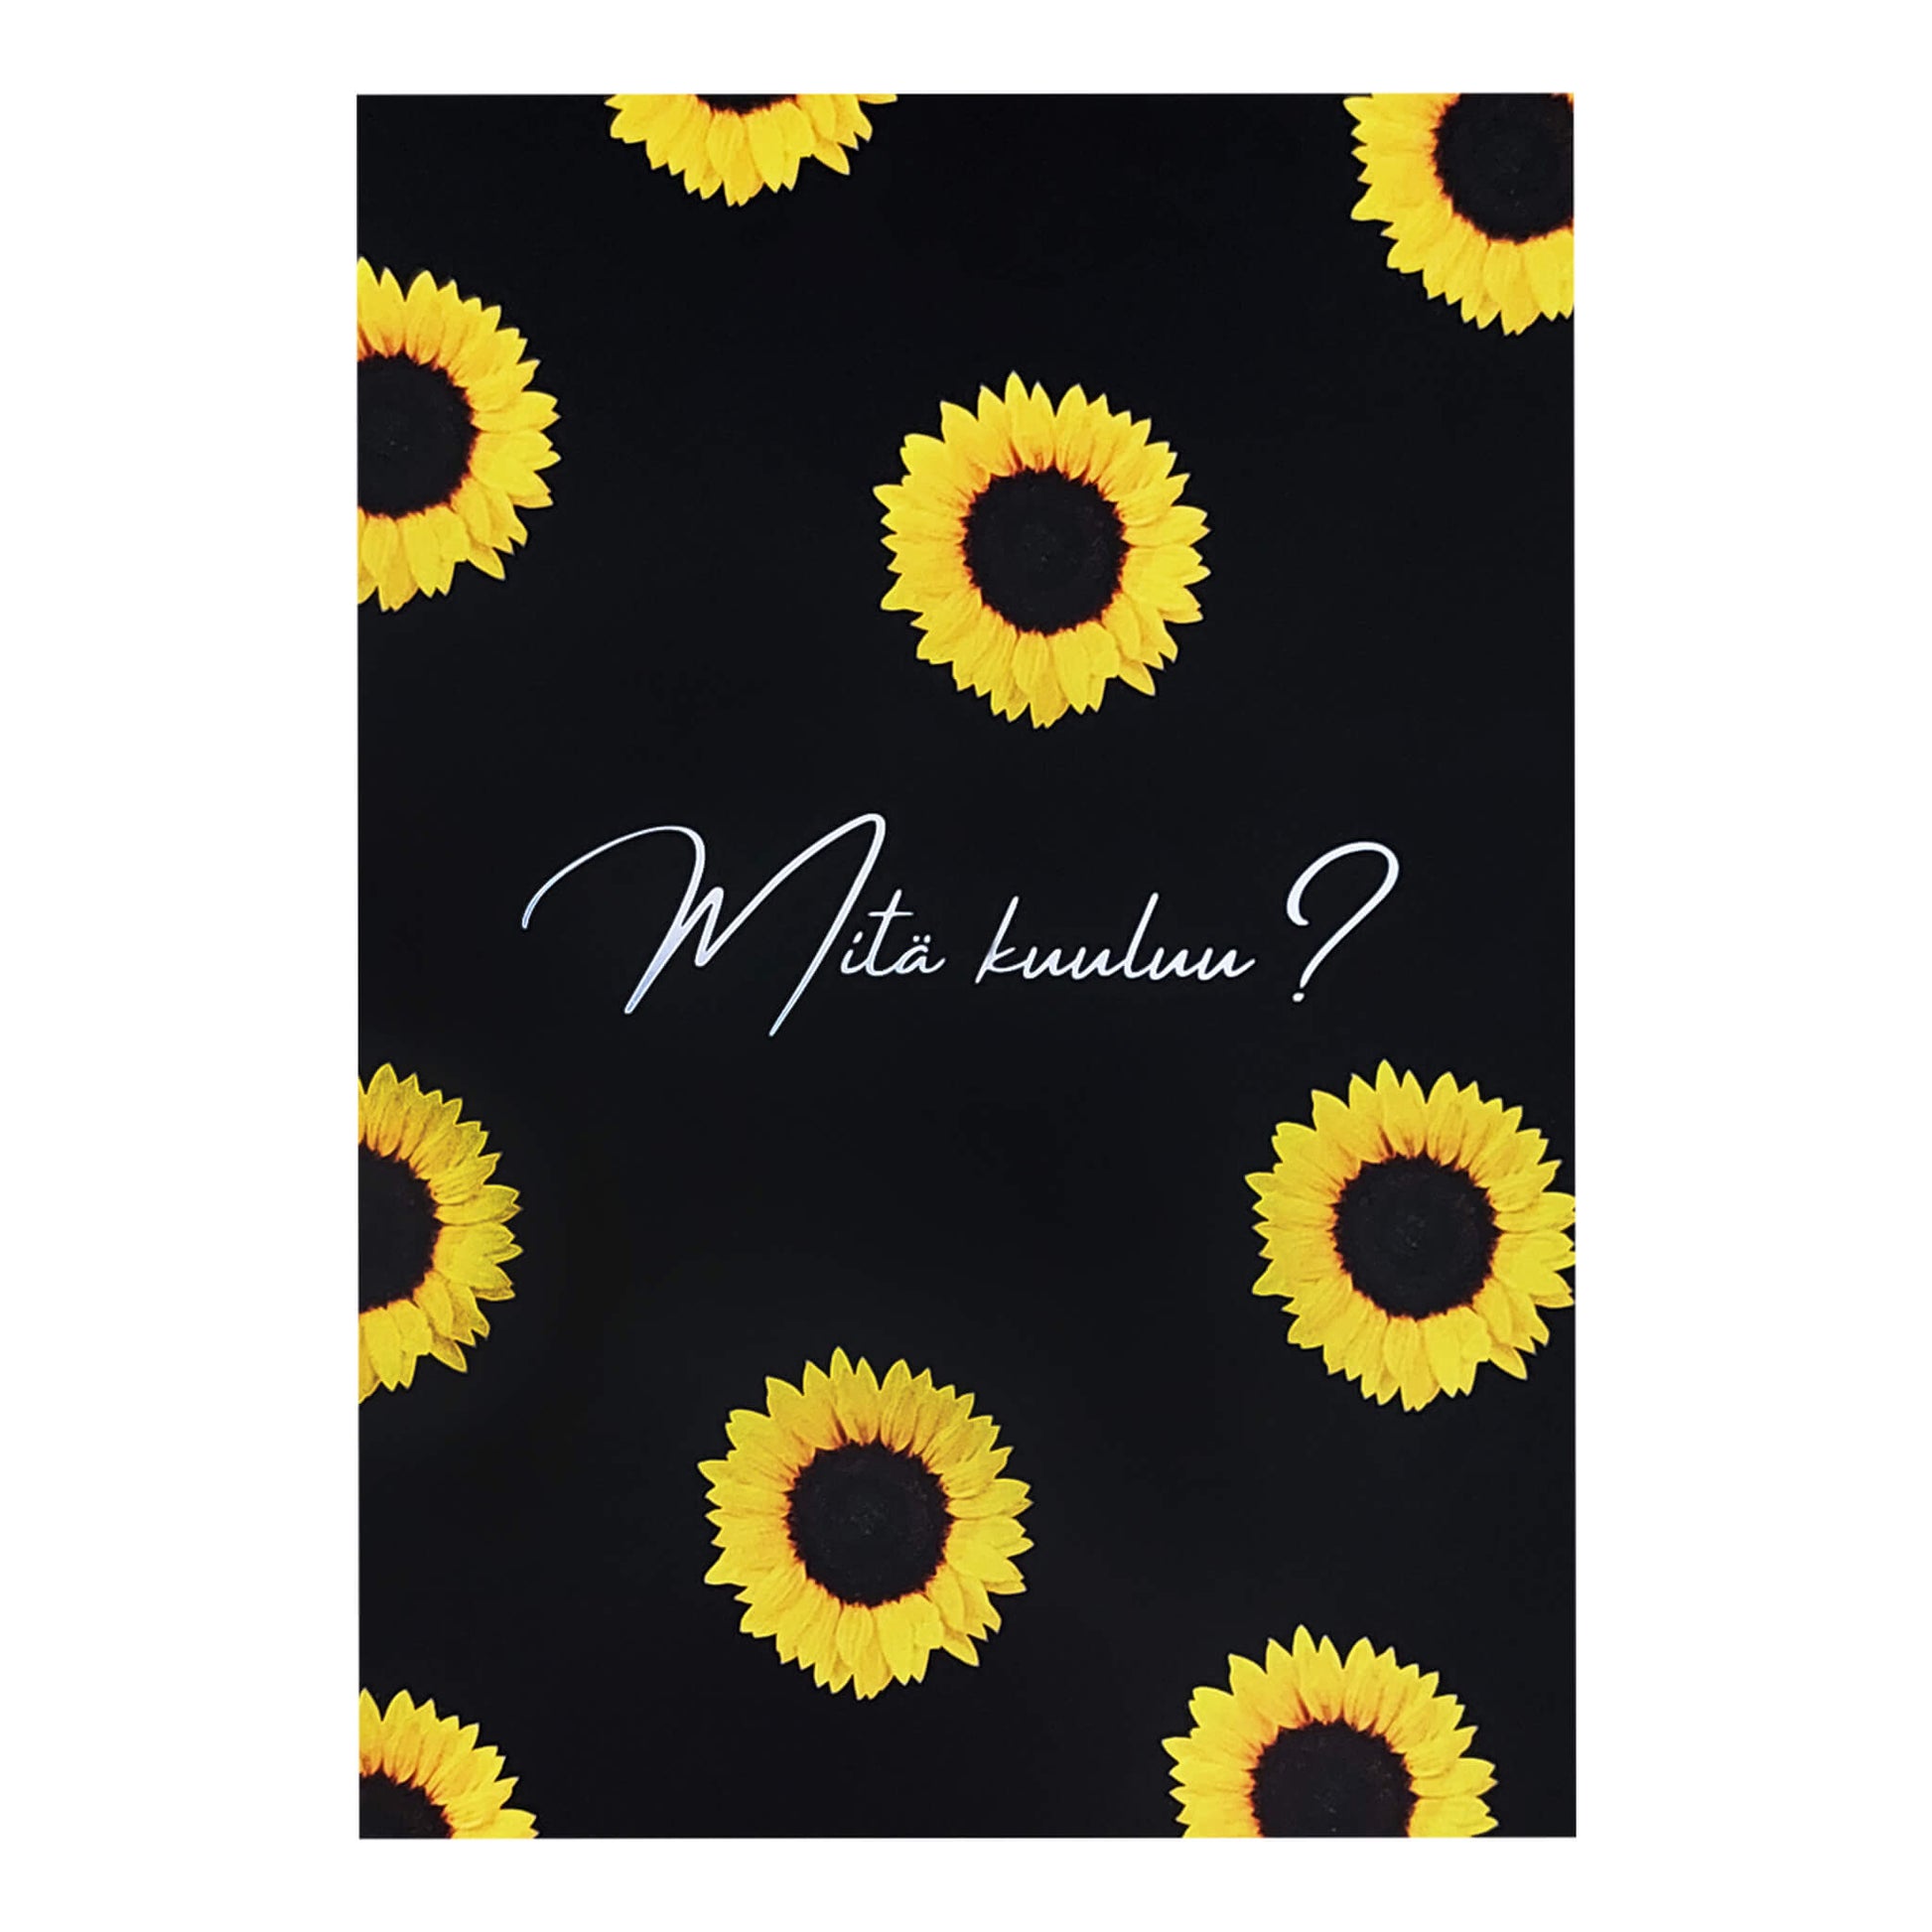 Postikortti tekstillä "Mitä kuuluu?". Kortissa on auringonkukkia.